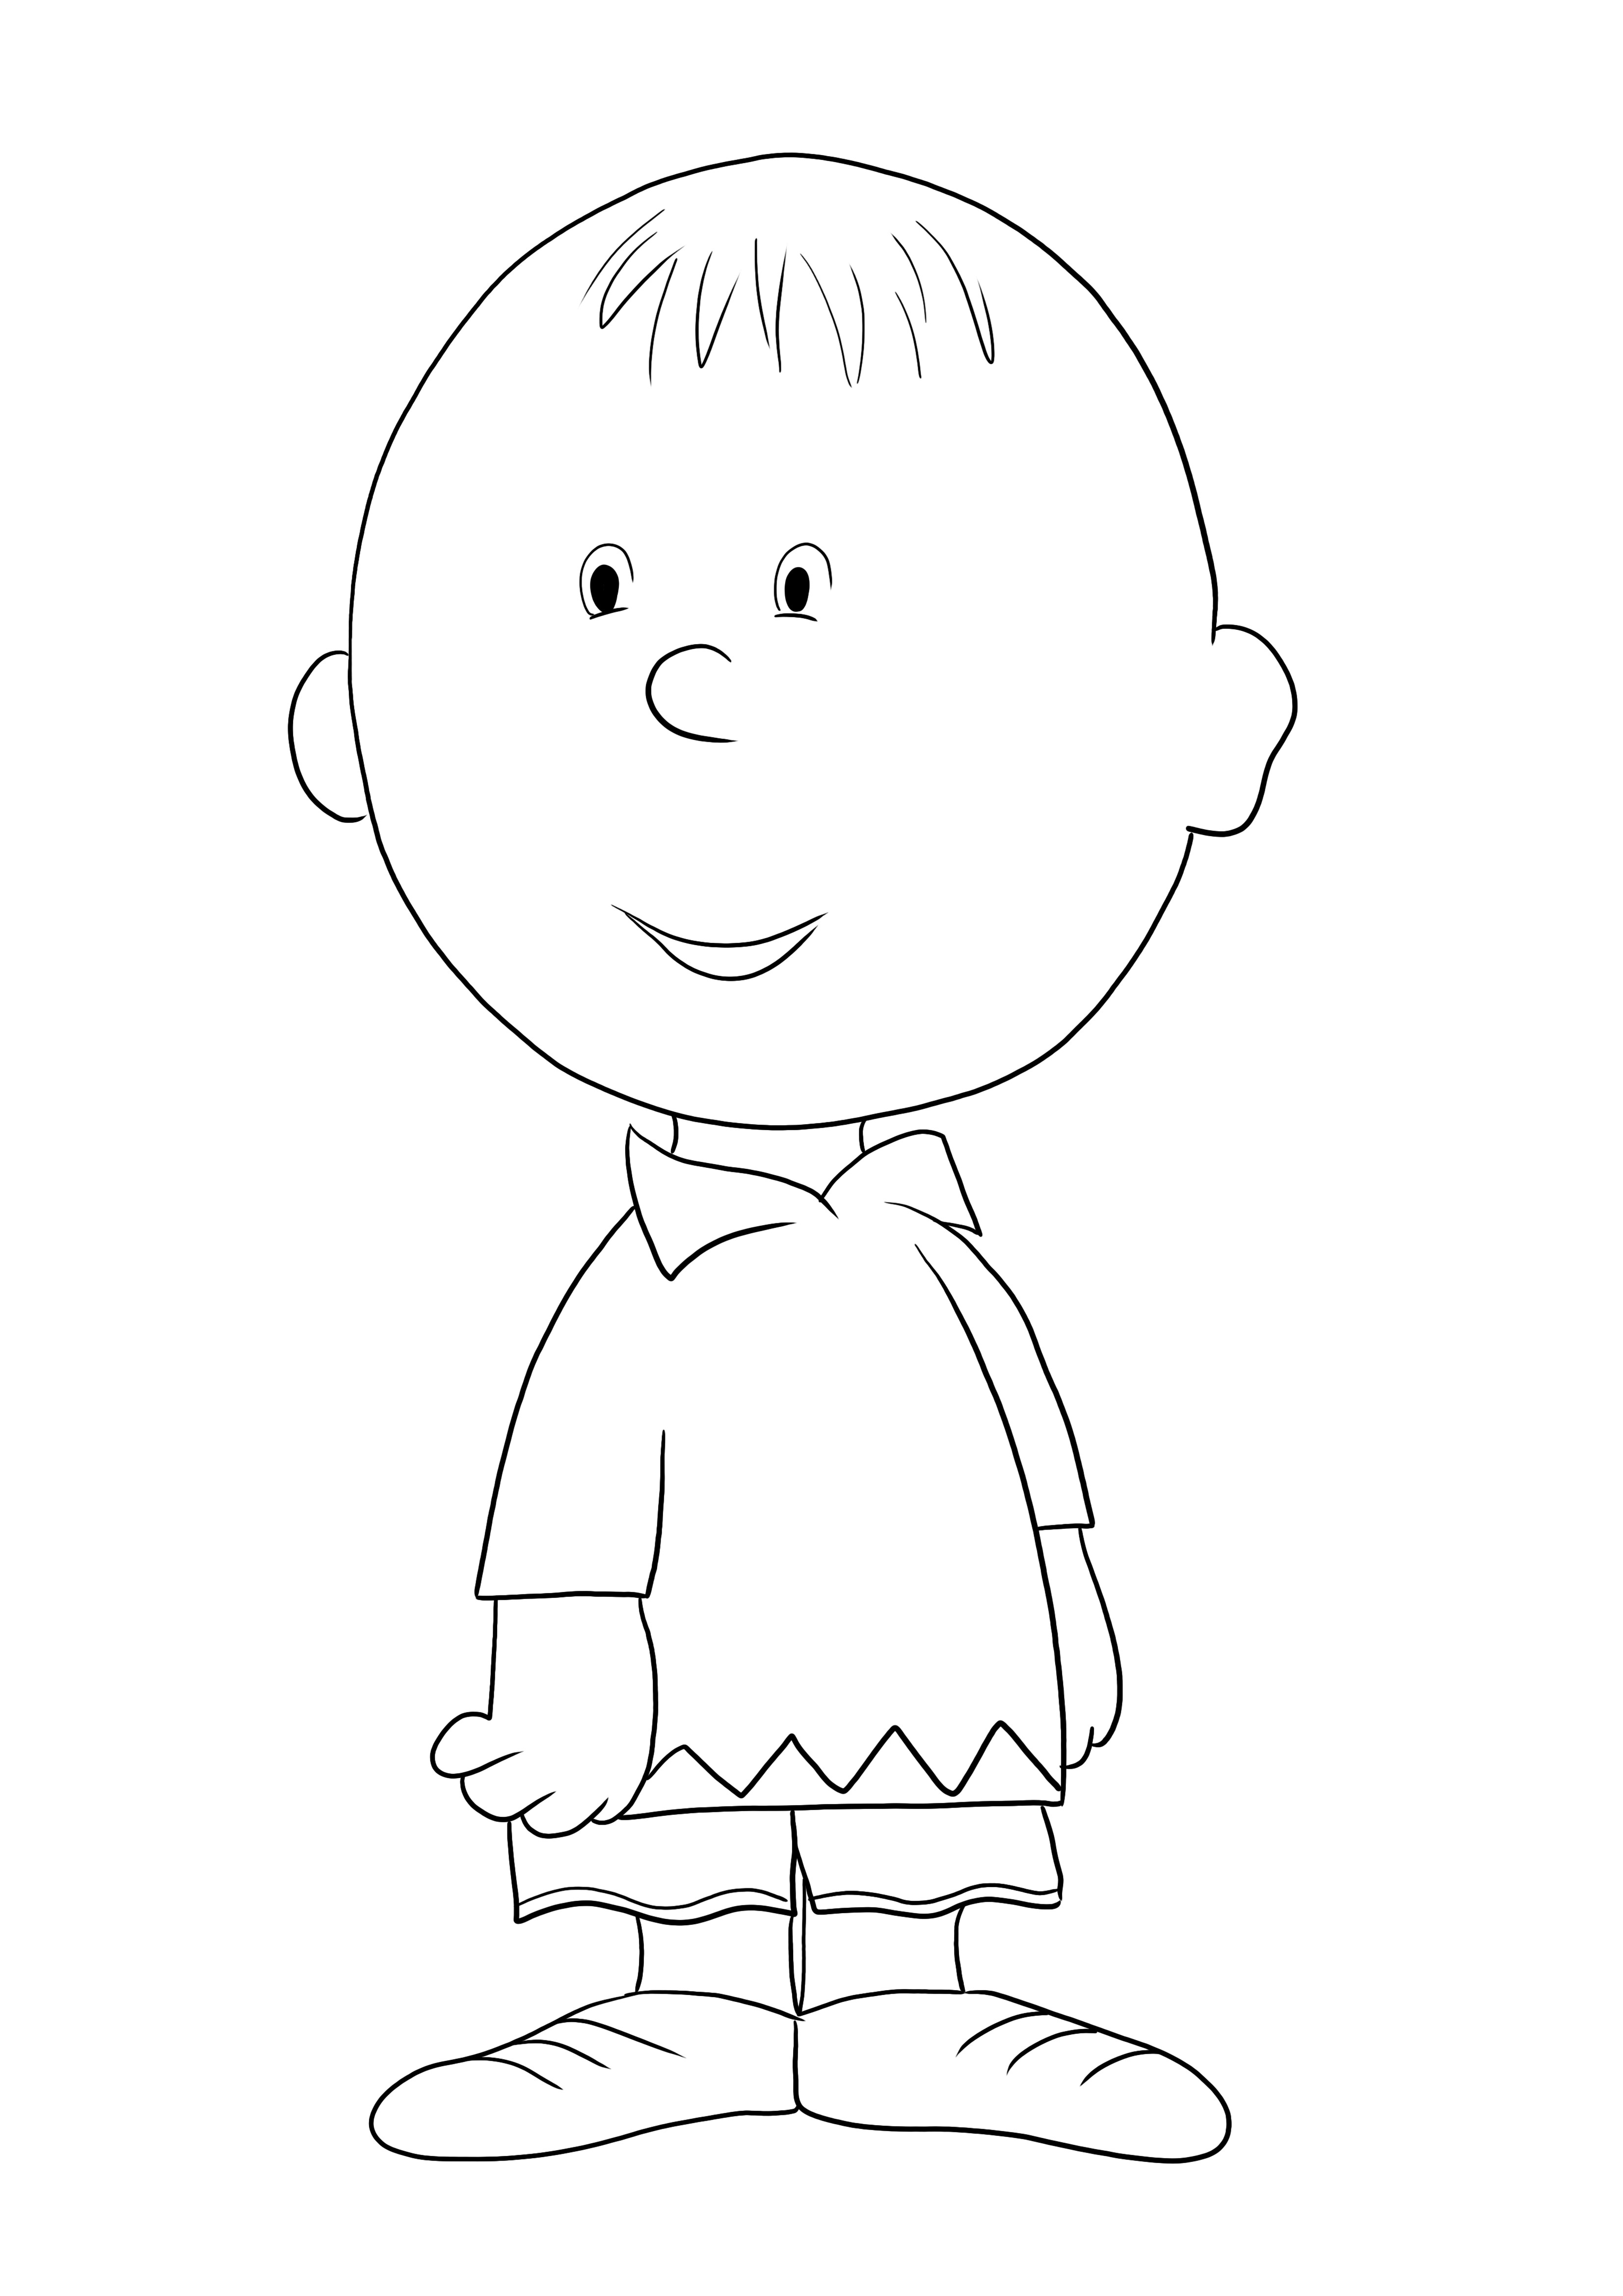 Süper sevimli Charlie Brown boyama sayfası çocuklar için ücretsiz olarak yazdırılabilir veya indirilebilir.